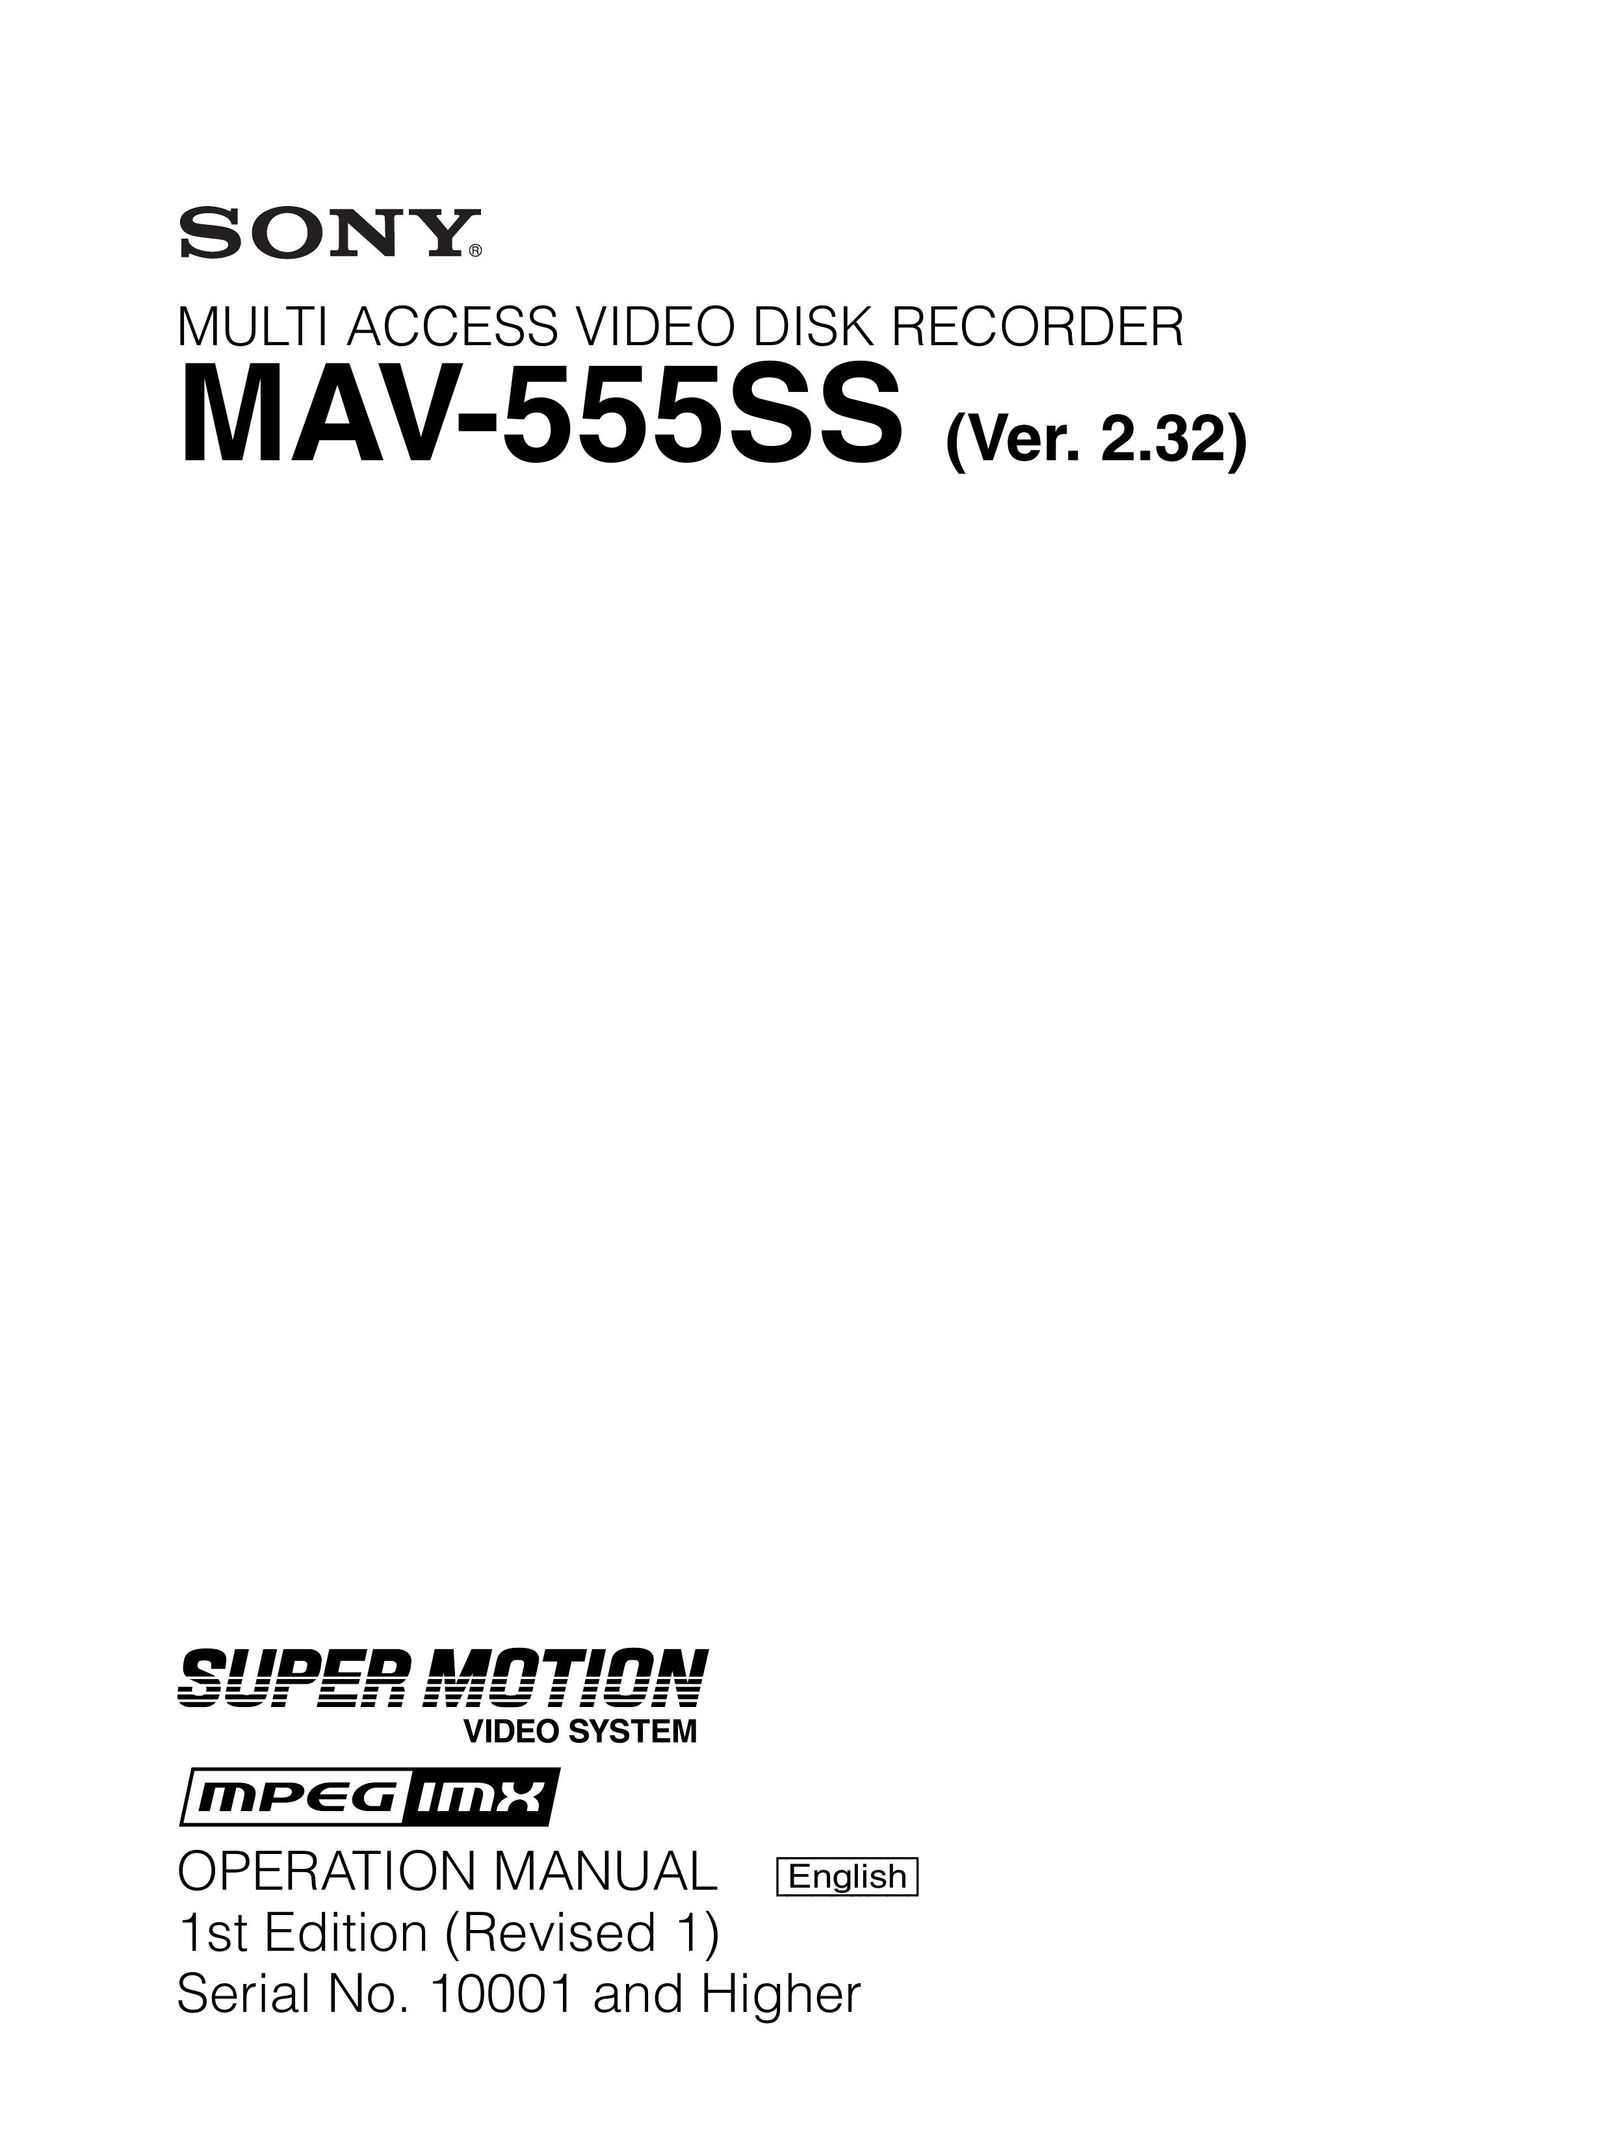 Sony MAV-555SS DVR User Manual